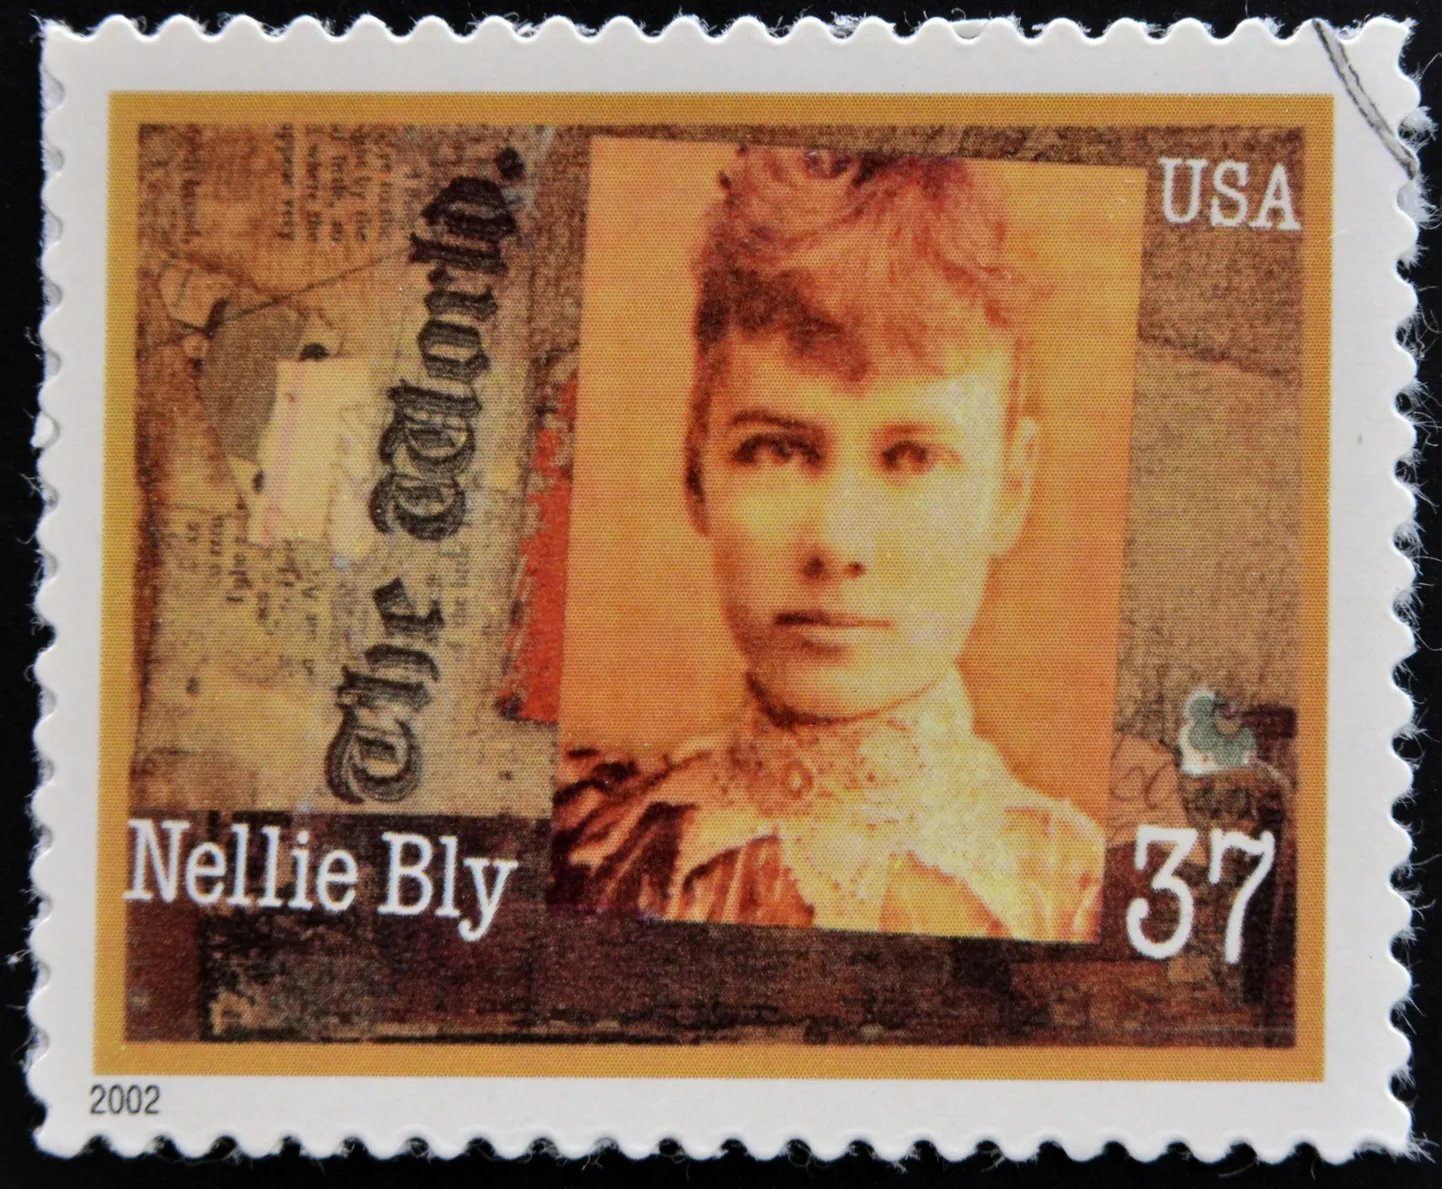 USA postmark, mis on pühendatud naistele ajakirjanduses. Fotol Nellie Bly.